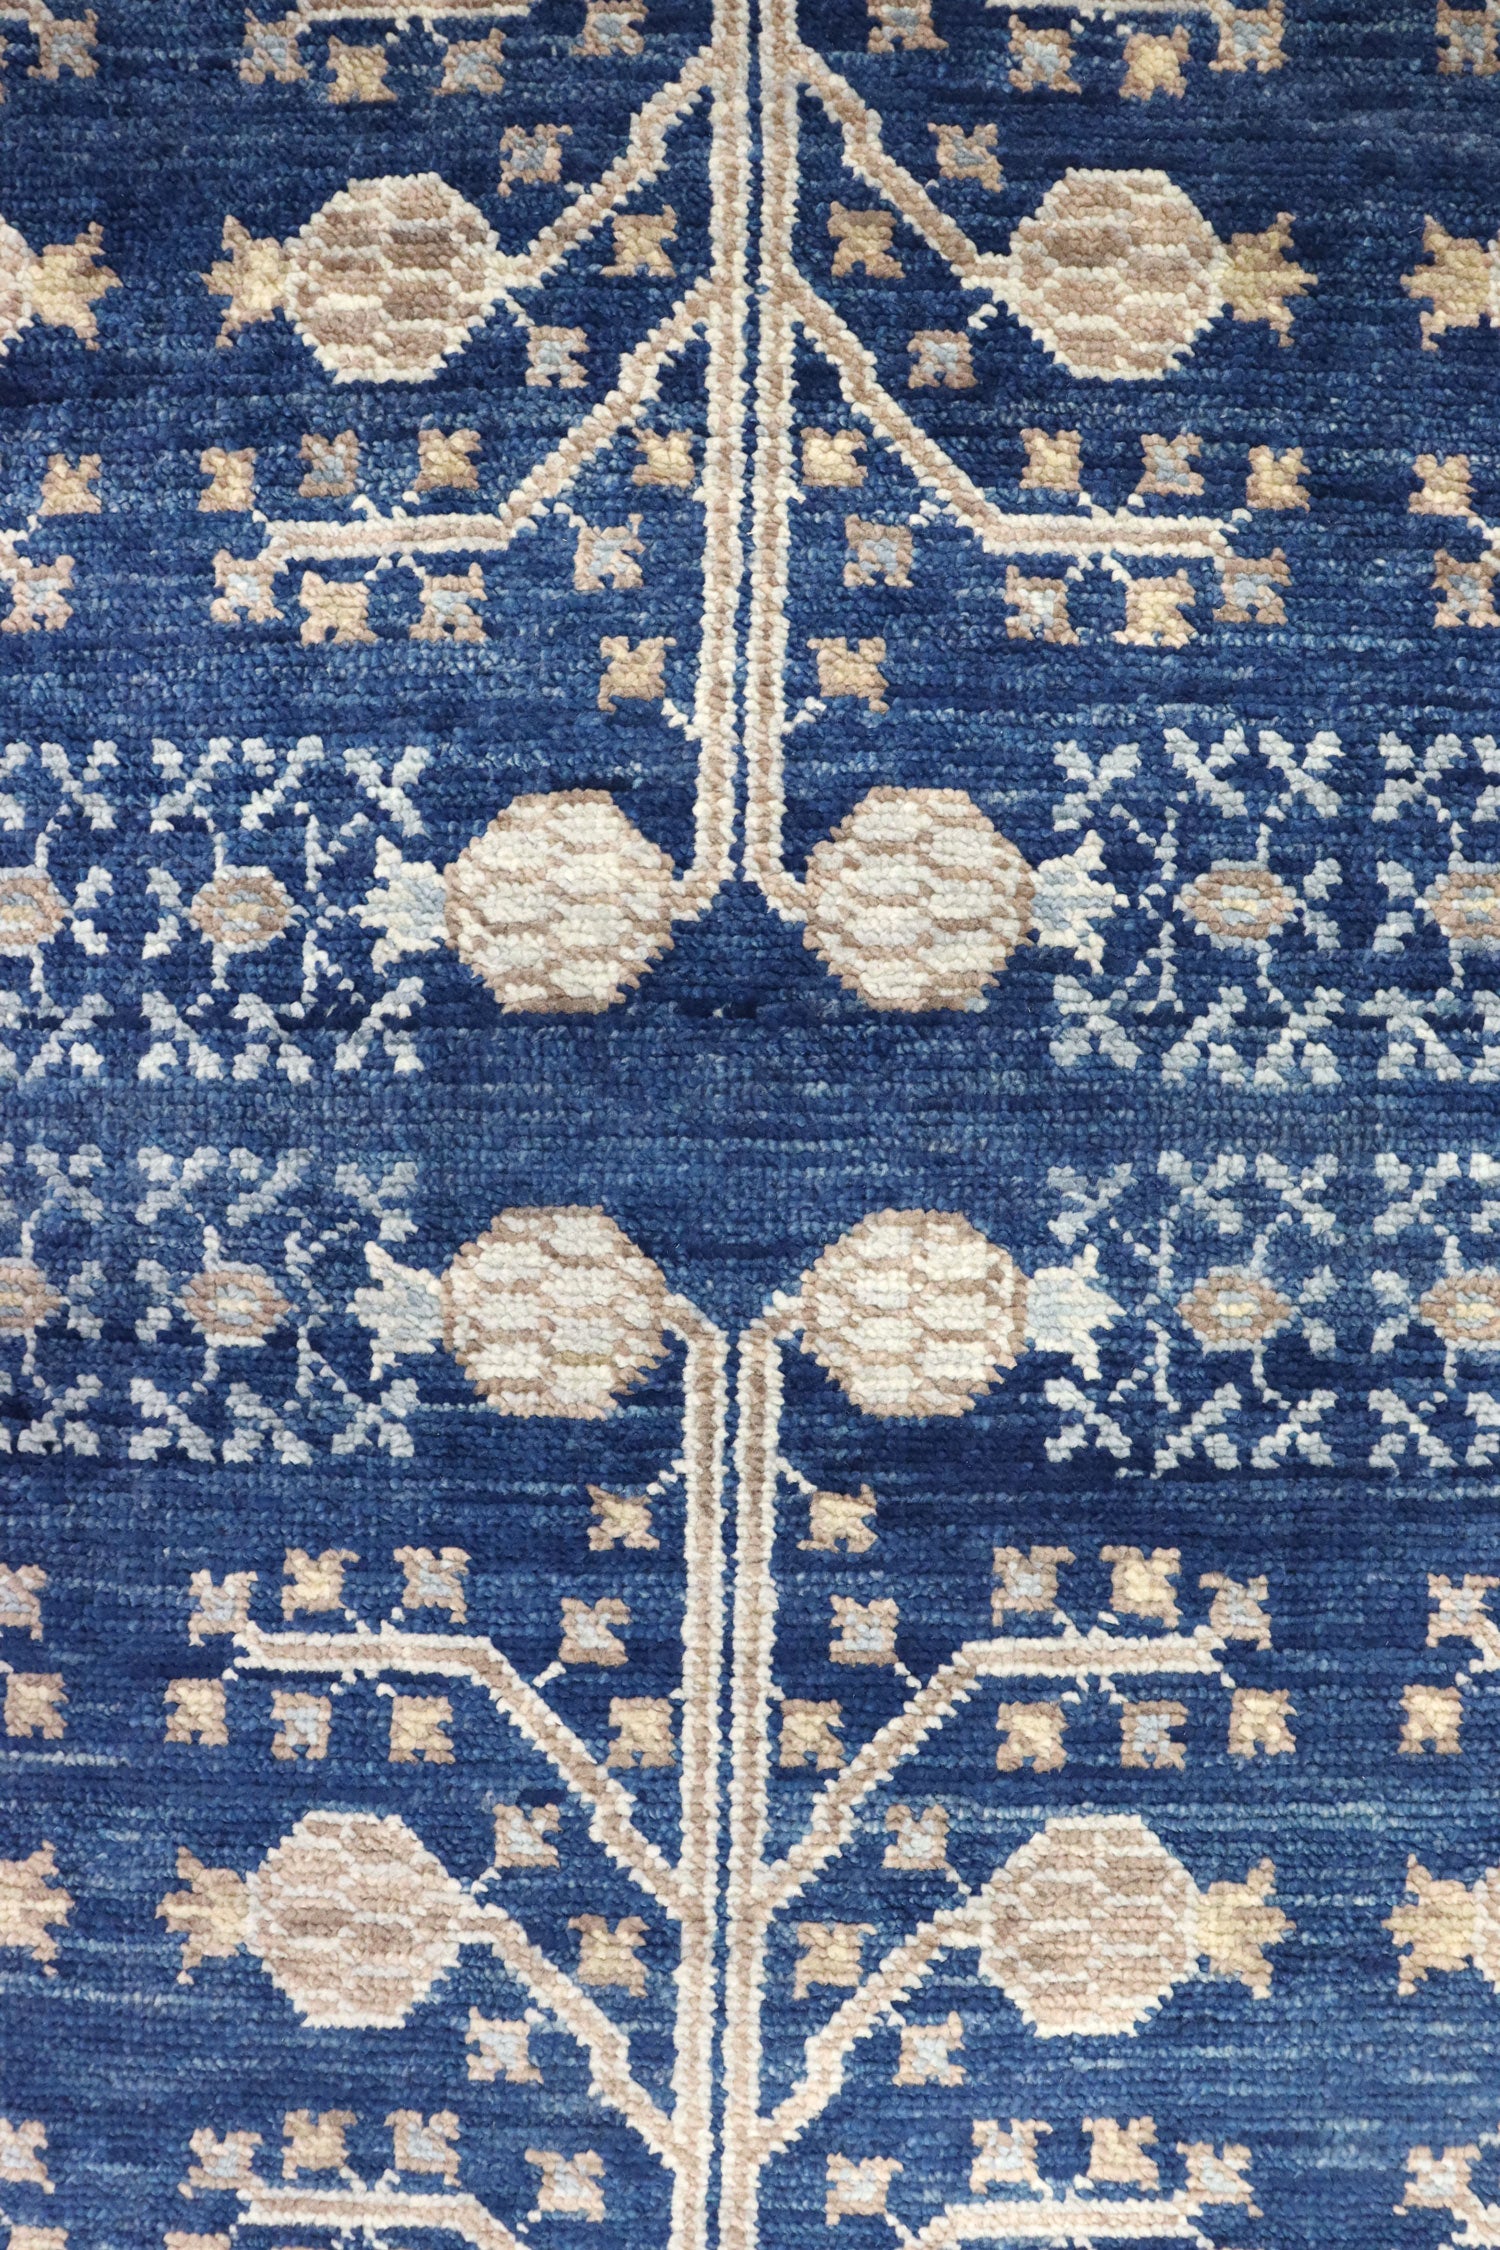 Khotan Handwoven Traditional Rug, J65691